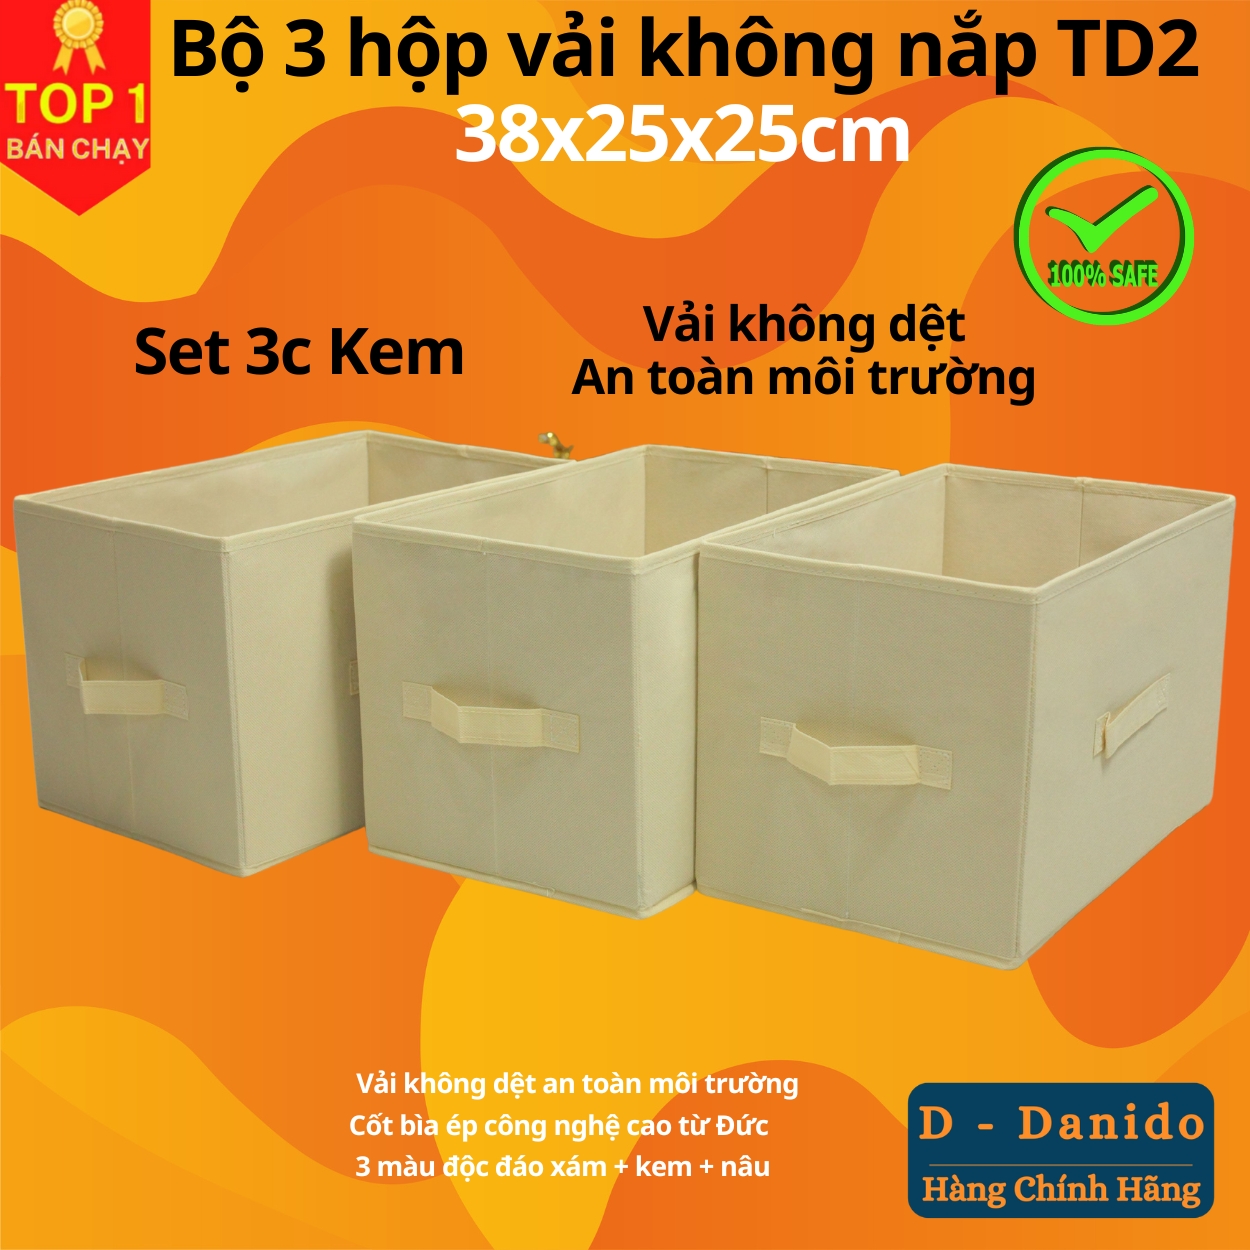 Combo 3 hộp vải đựng đồ đa năng TD2 – Bộ 3 túi vải Thụy Điển không nắp tiết kiệm sang trọng dung tích 24L mỗi hộp - chính hãng